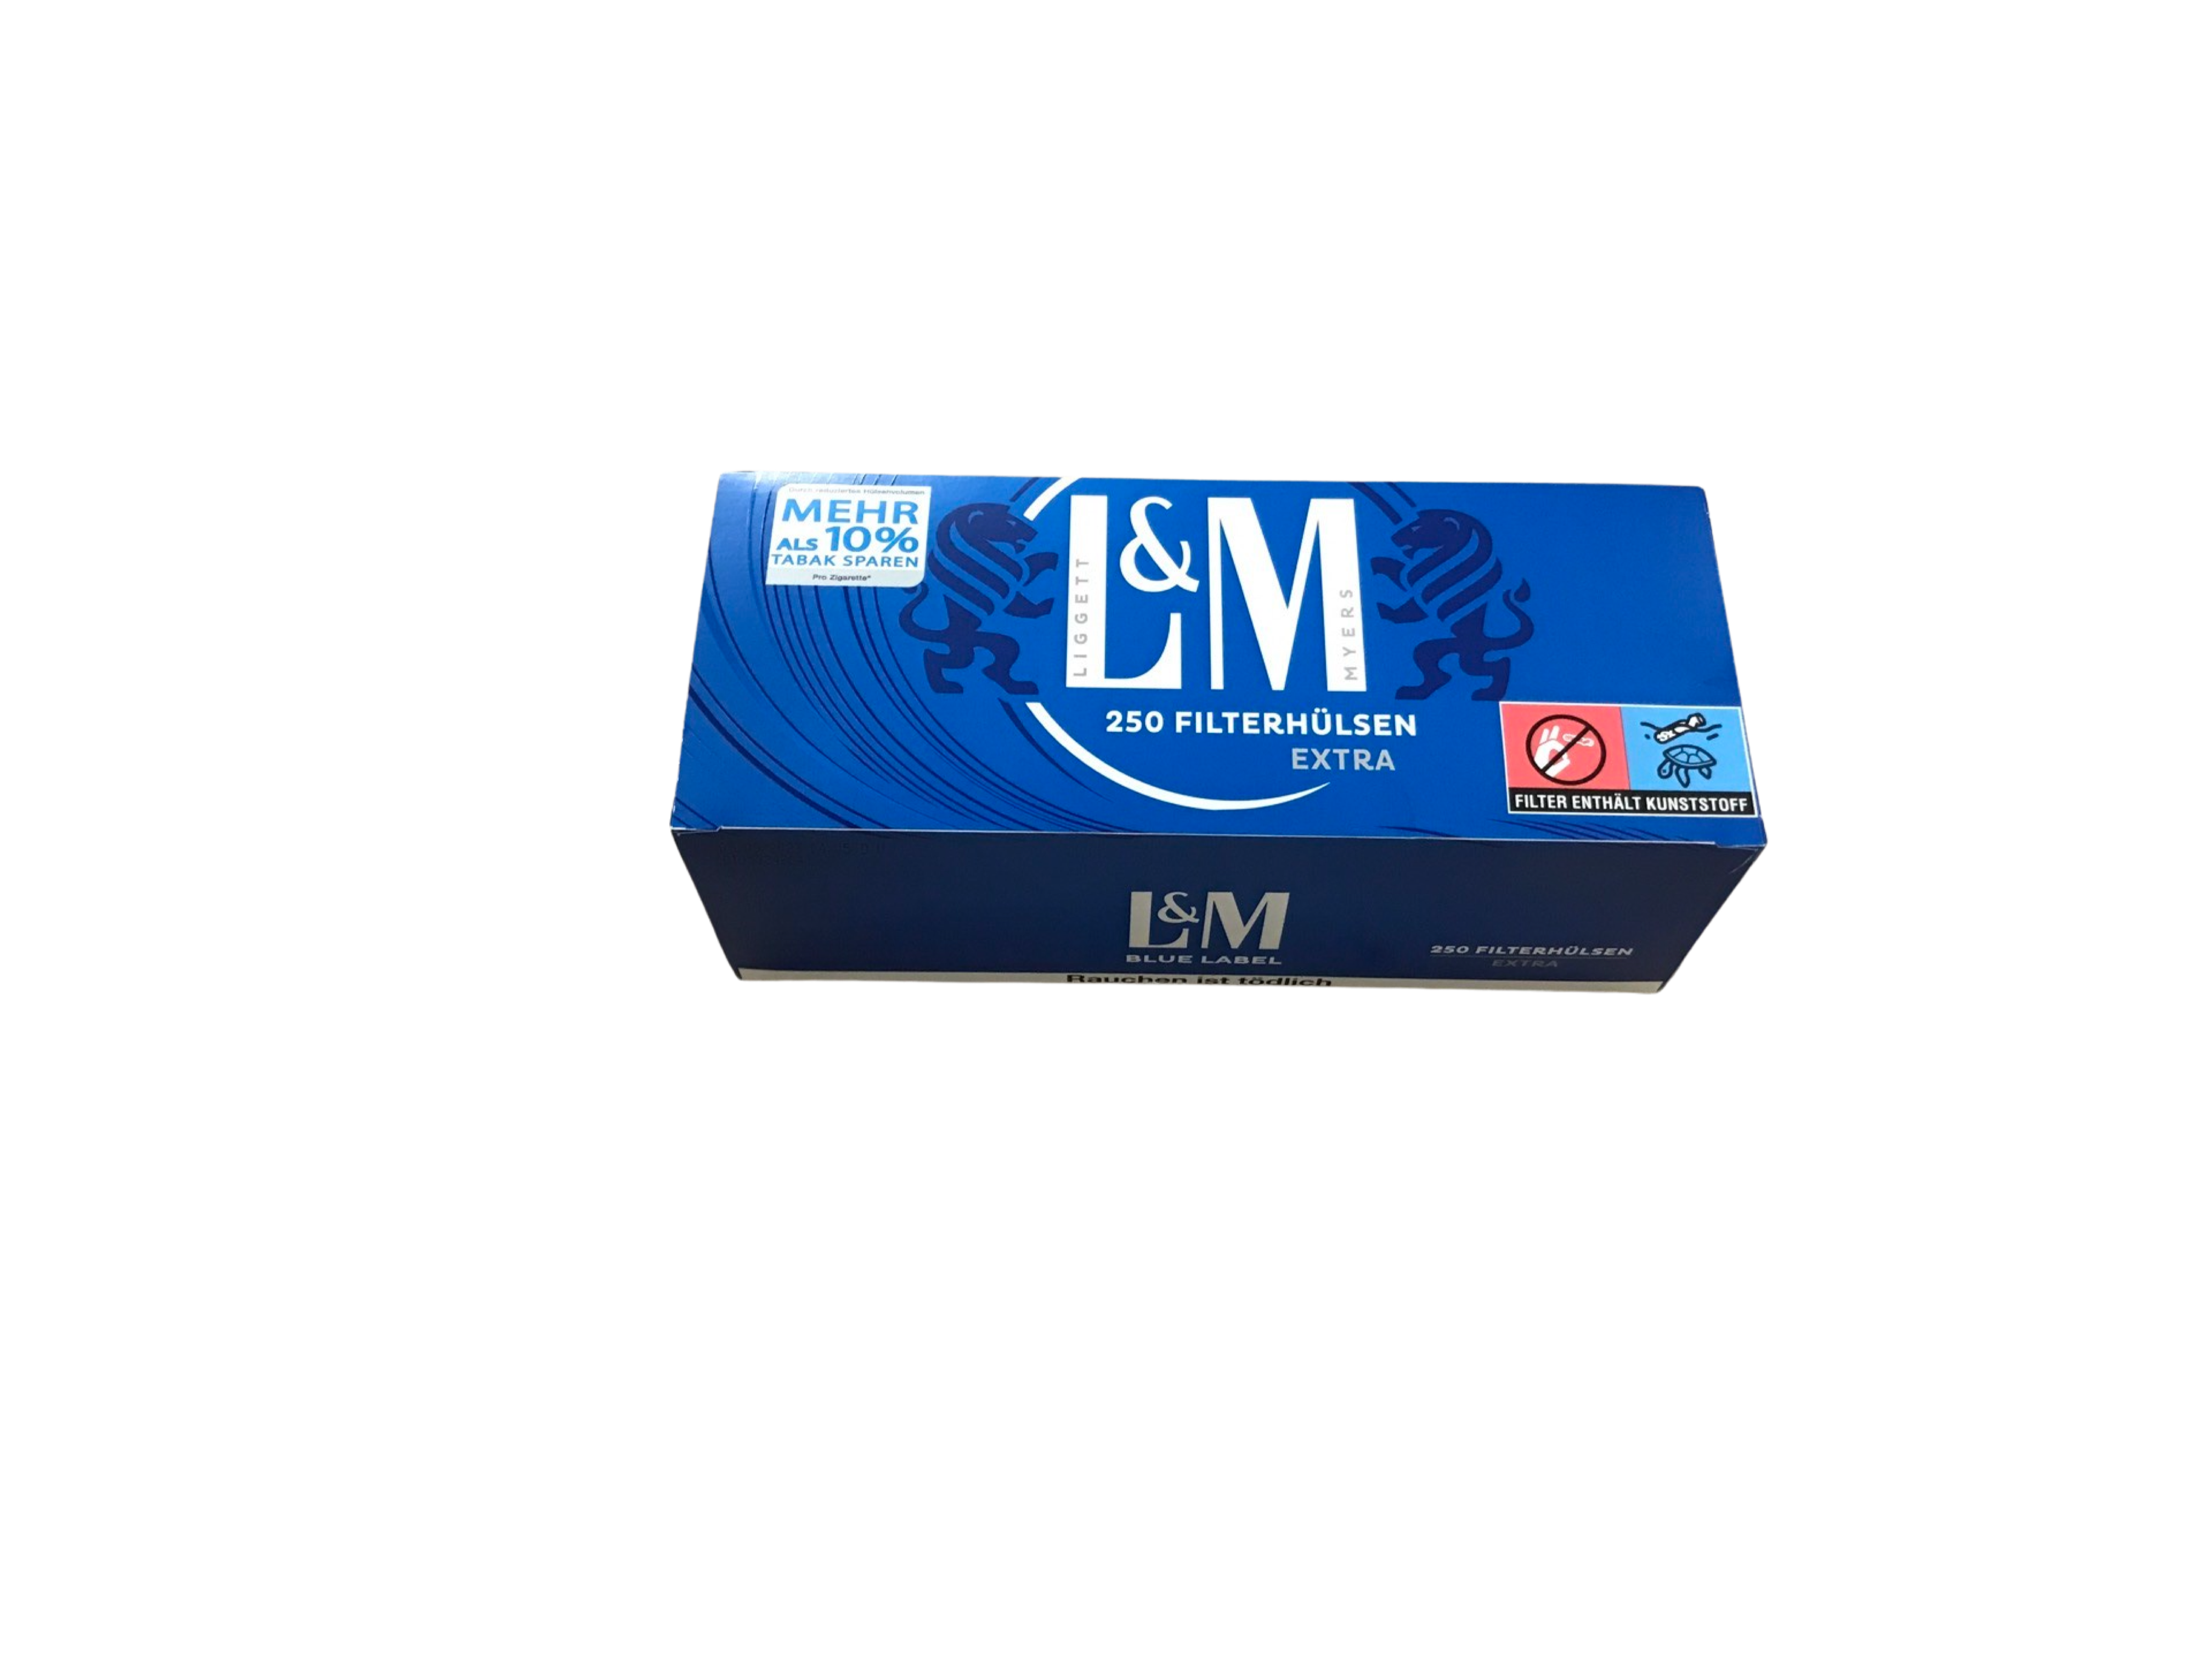 L&M Extra Filterhülsen Blue Label (4) 250 Stück Packung